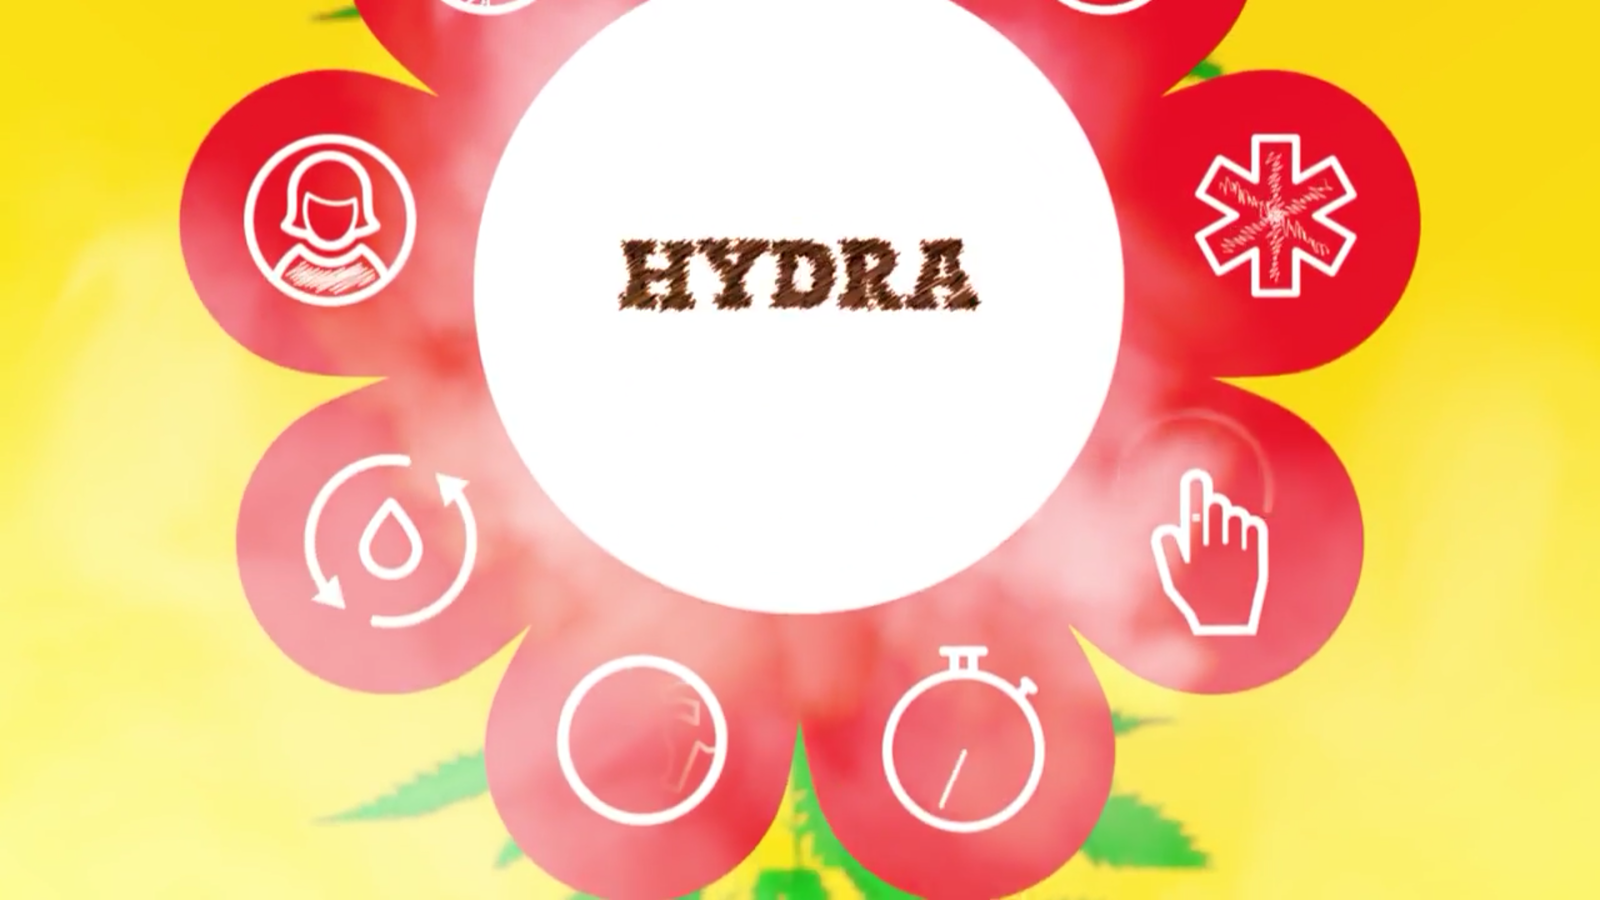 Hydra реклама ютуб как провозить марихуану